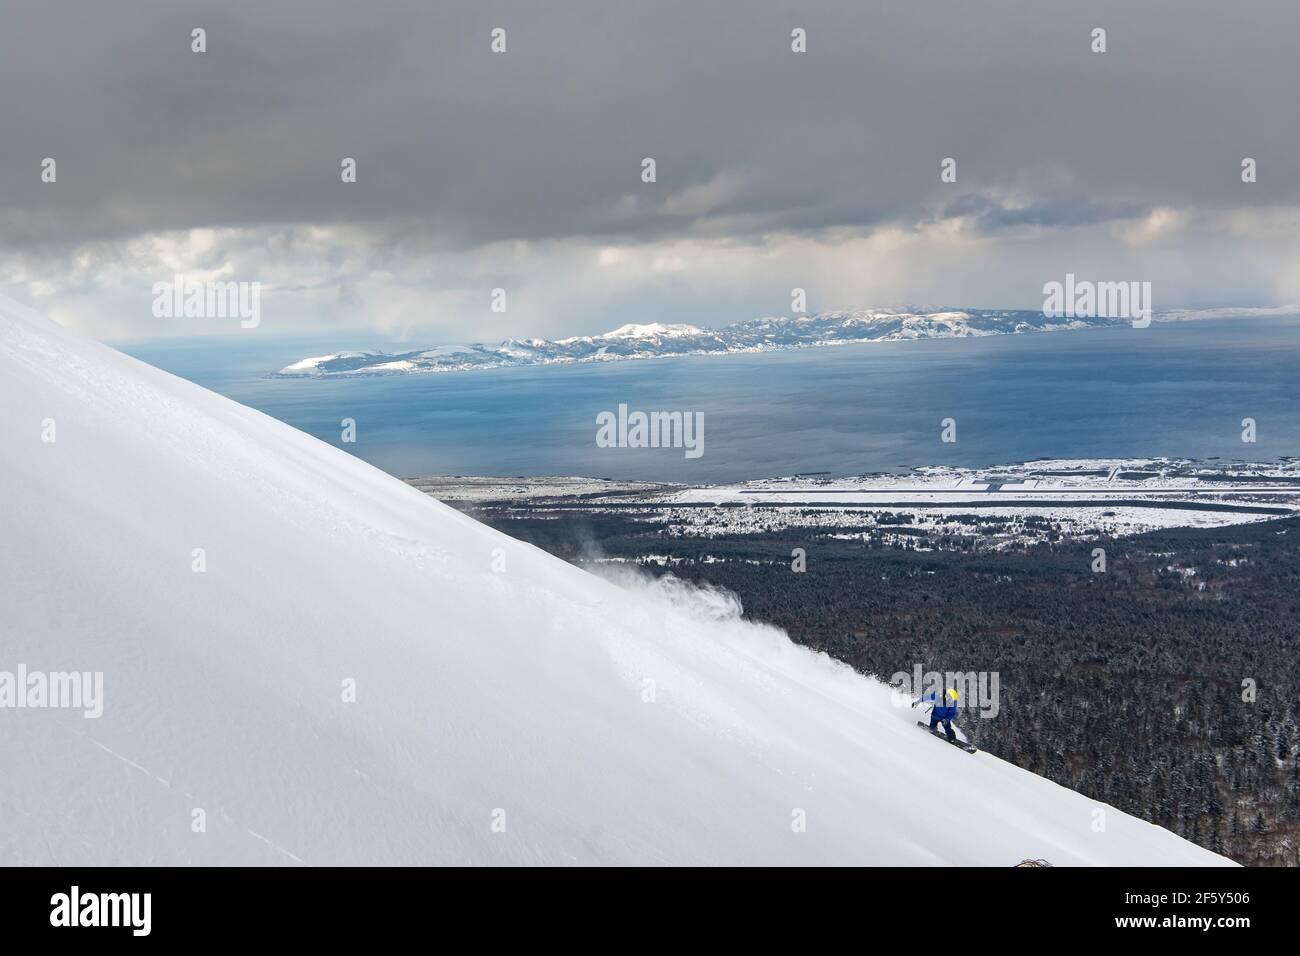 Persona snowboard en la ladera de la montaña nevada contra el cielo durante vacaciones de invierno Foto de stock